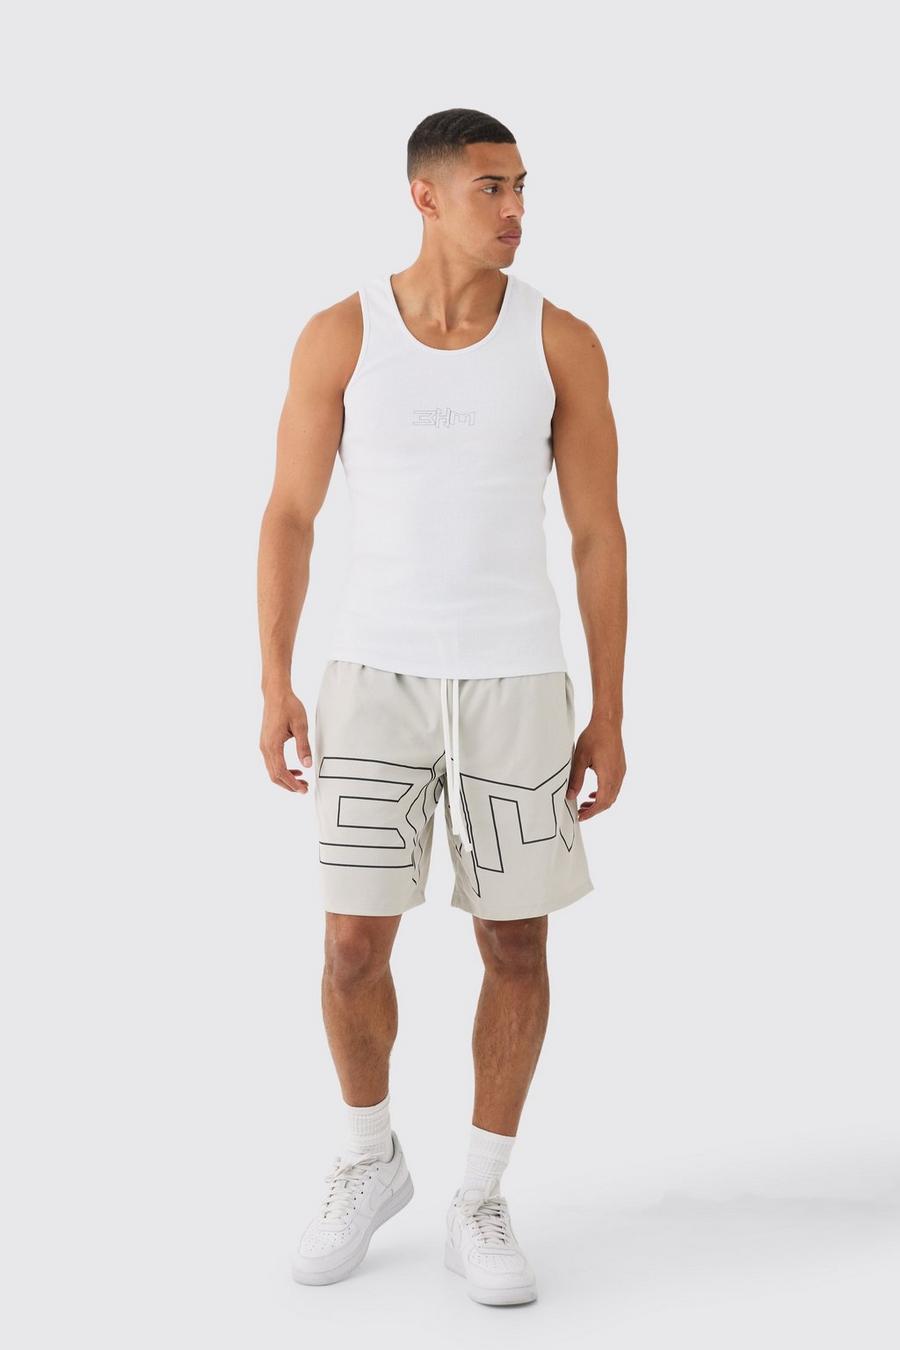 Conjunto de pantalón corto de malla estilo baloncesto y camiseta sin mangas de canalé ajustada al músculo, Multi